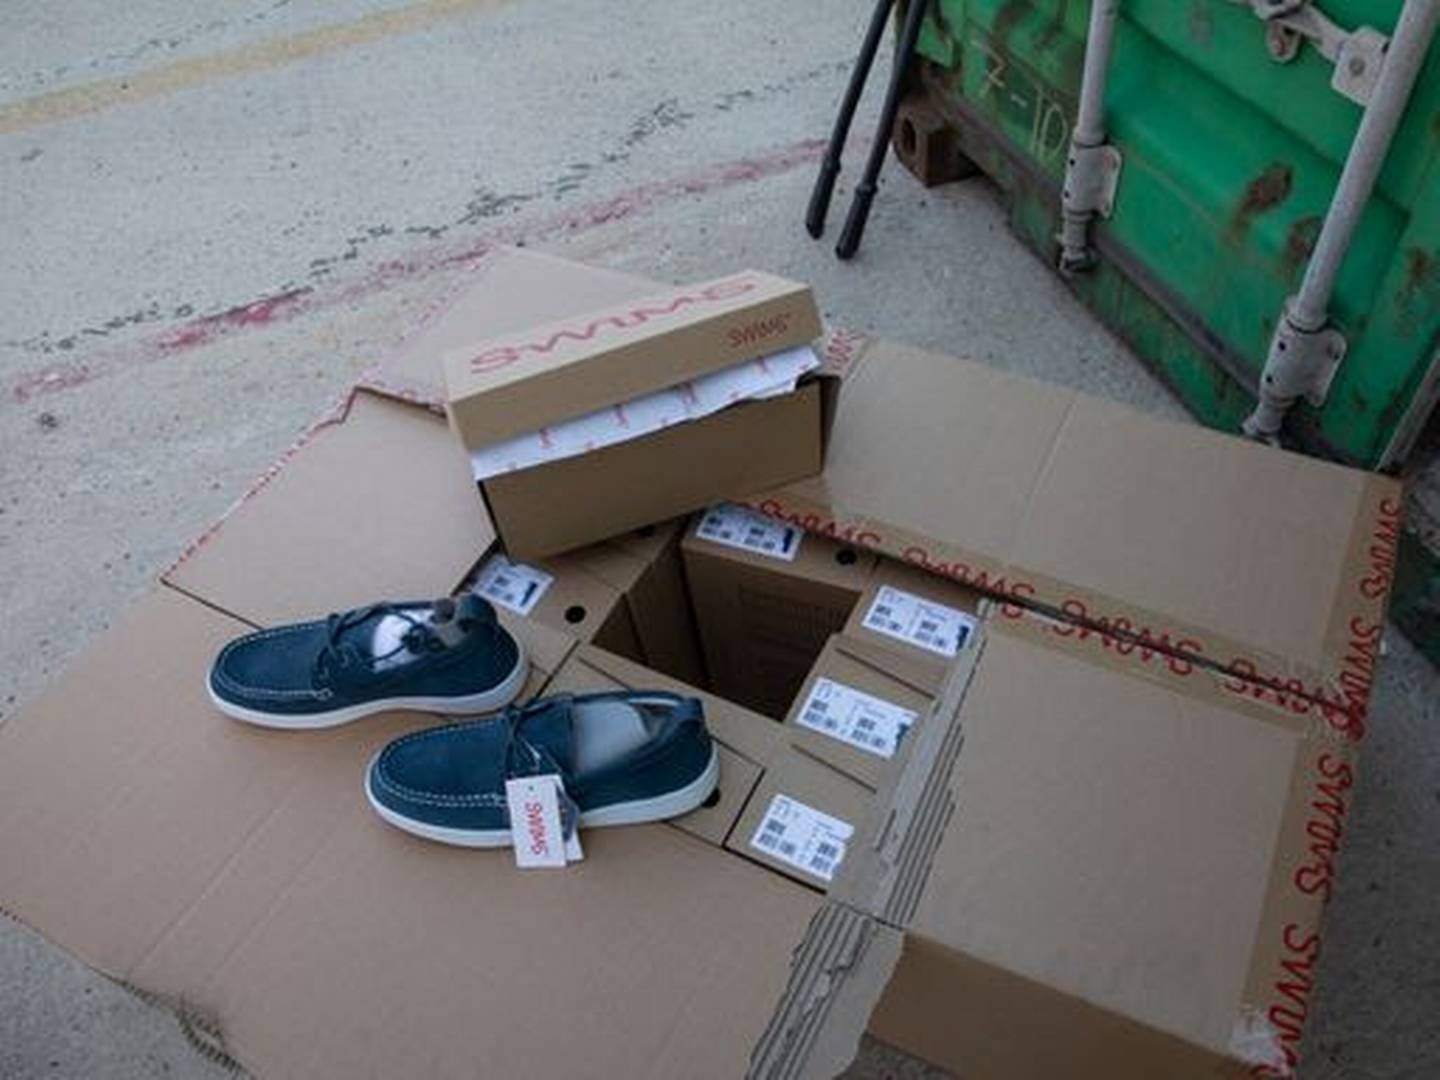 FALSKE: Tolletaten beslagla 135 000 par falske Swims-sko i løpet av sommren. Beslaget på Oslo Havn er Norgeshistoriens største beslag av falske merkevarer. | Foto: Tolletaten/NTB